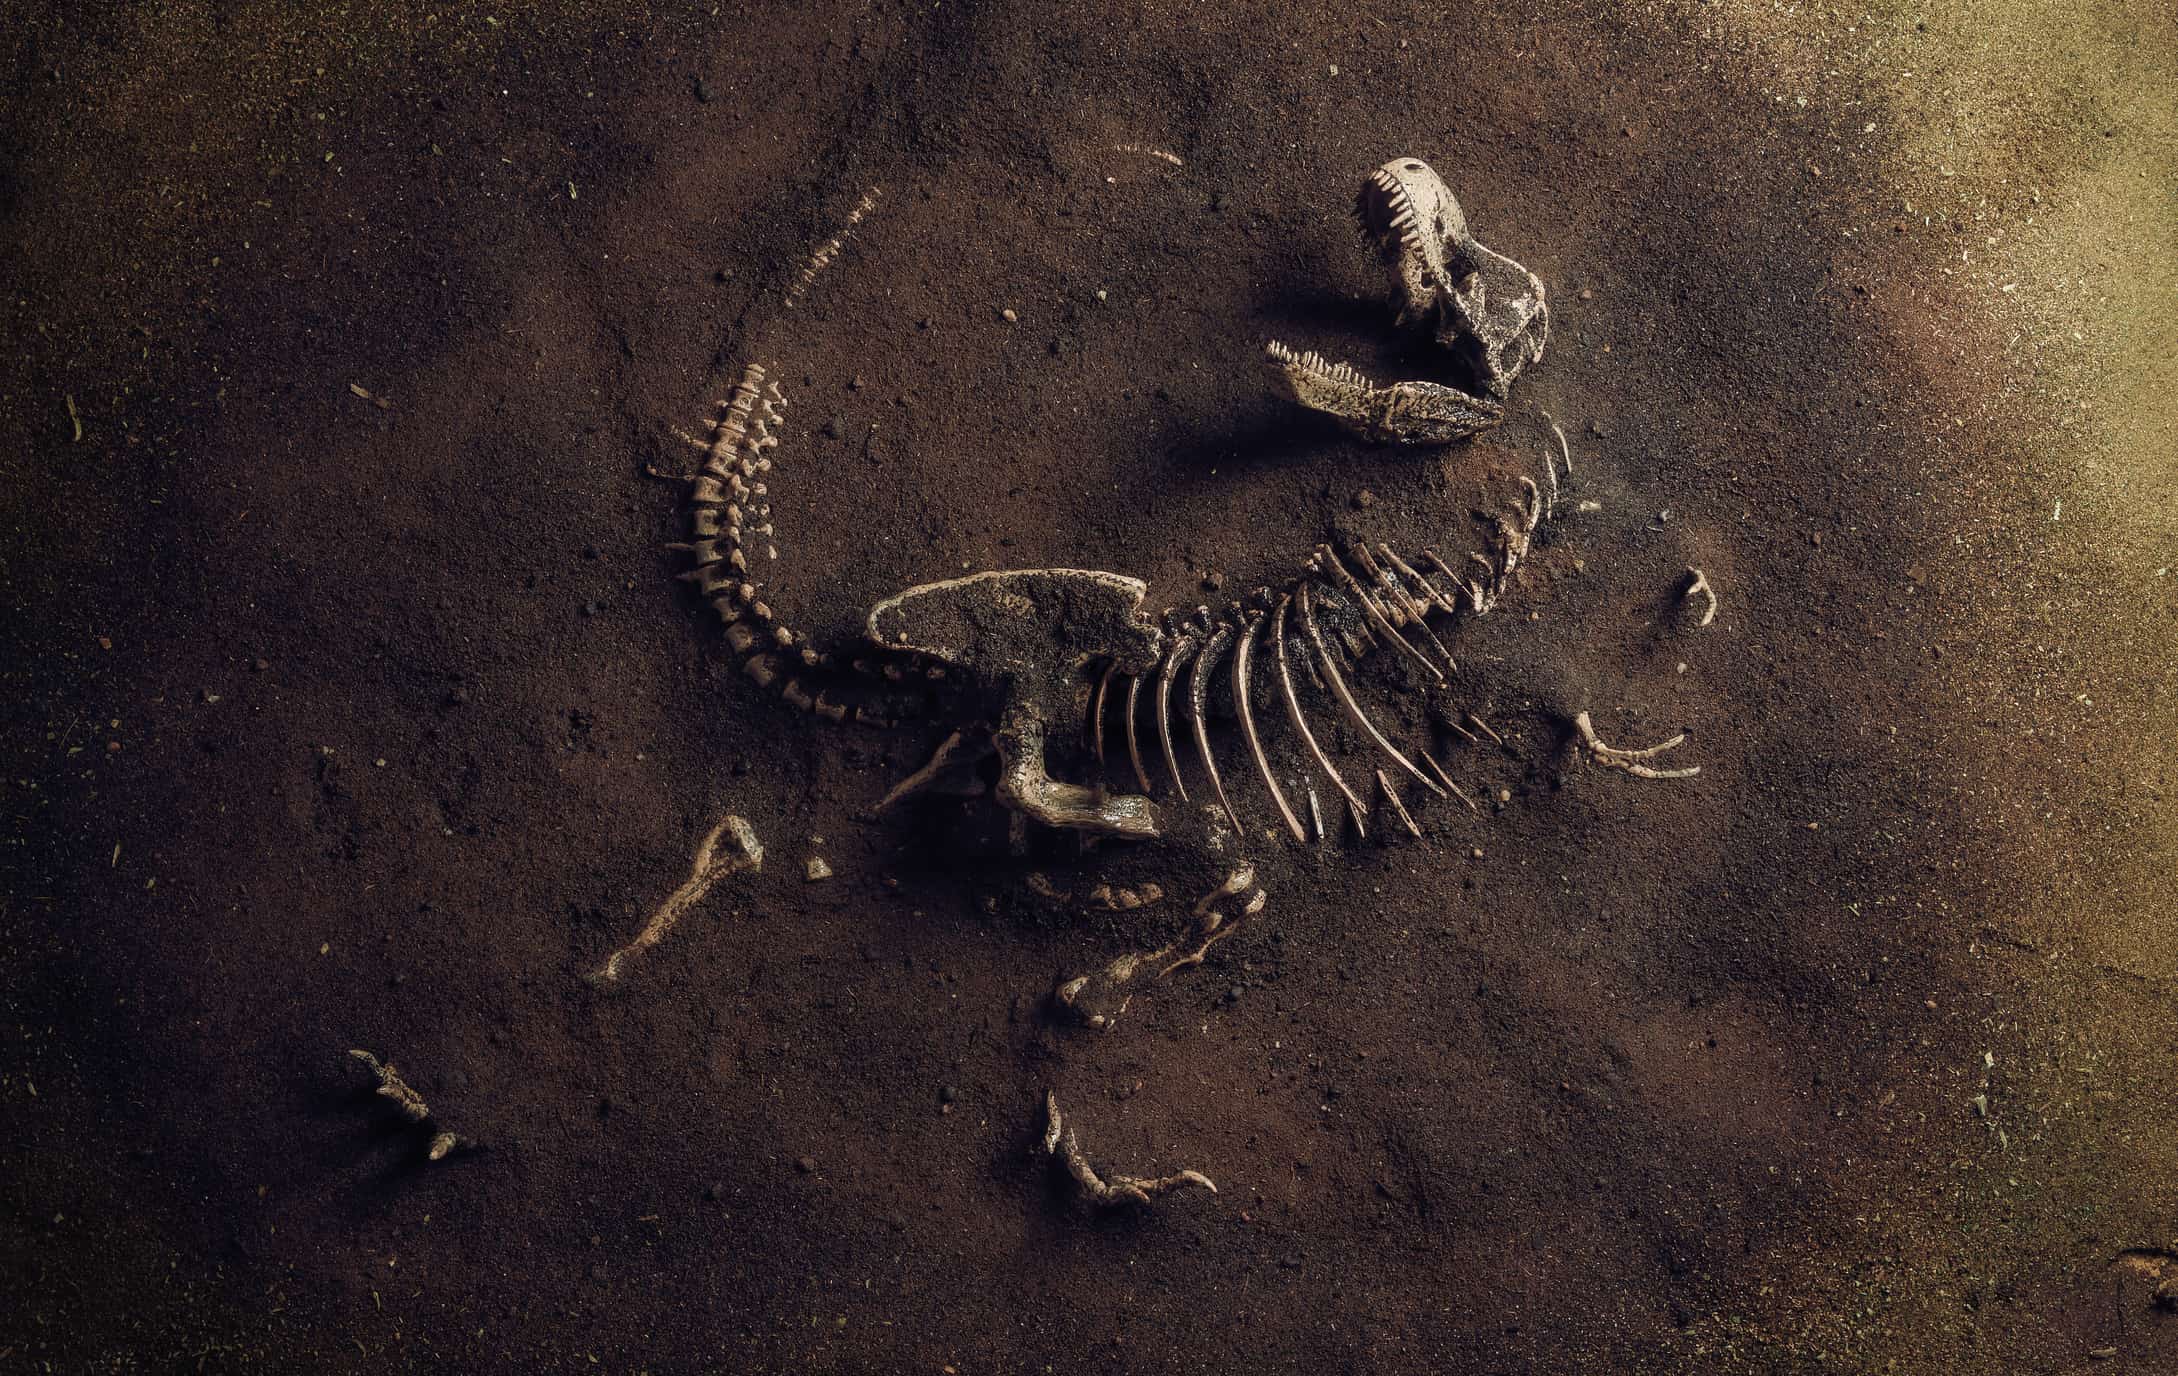 Fossile di dinosauro (Tyrannosaurus Rex) trovato dagli archeologi